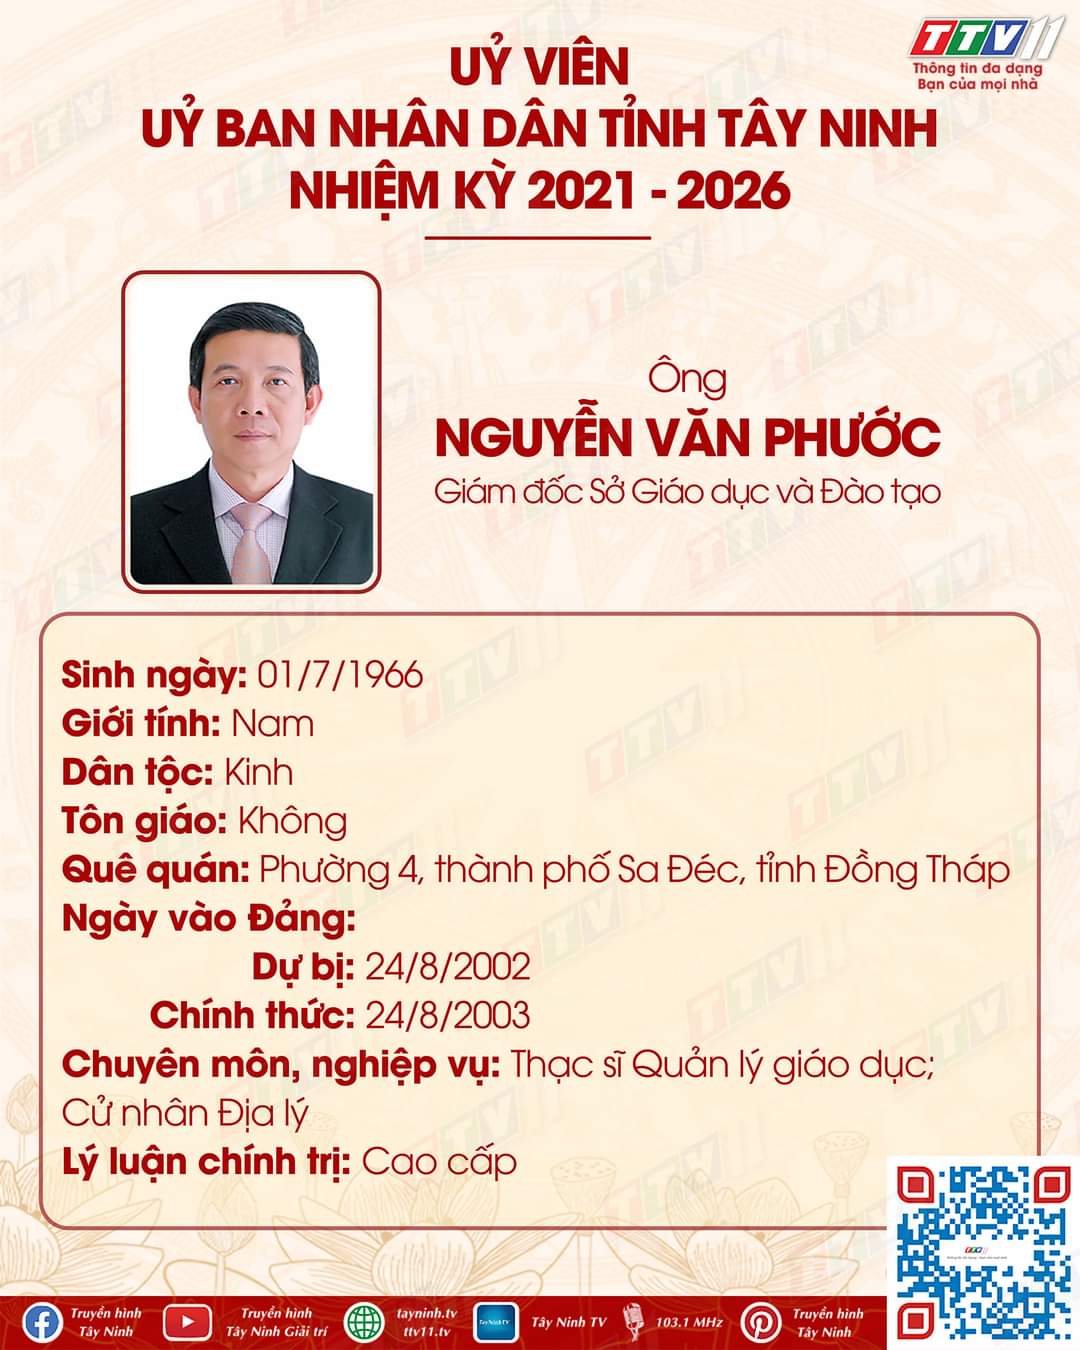 Ông Nguyễn Văn Phước – Giám đốc Sở Giáo dục và Đào tạo đã trúng cử chức danh Uỷ viên UBND tỉnh Tây Ninh, nhiệm kỳ 2021 – 2026